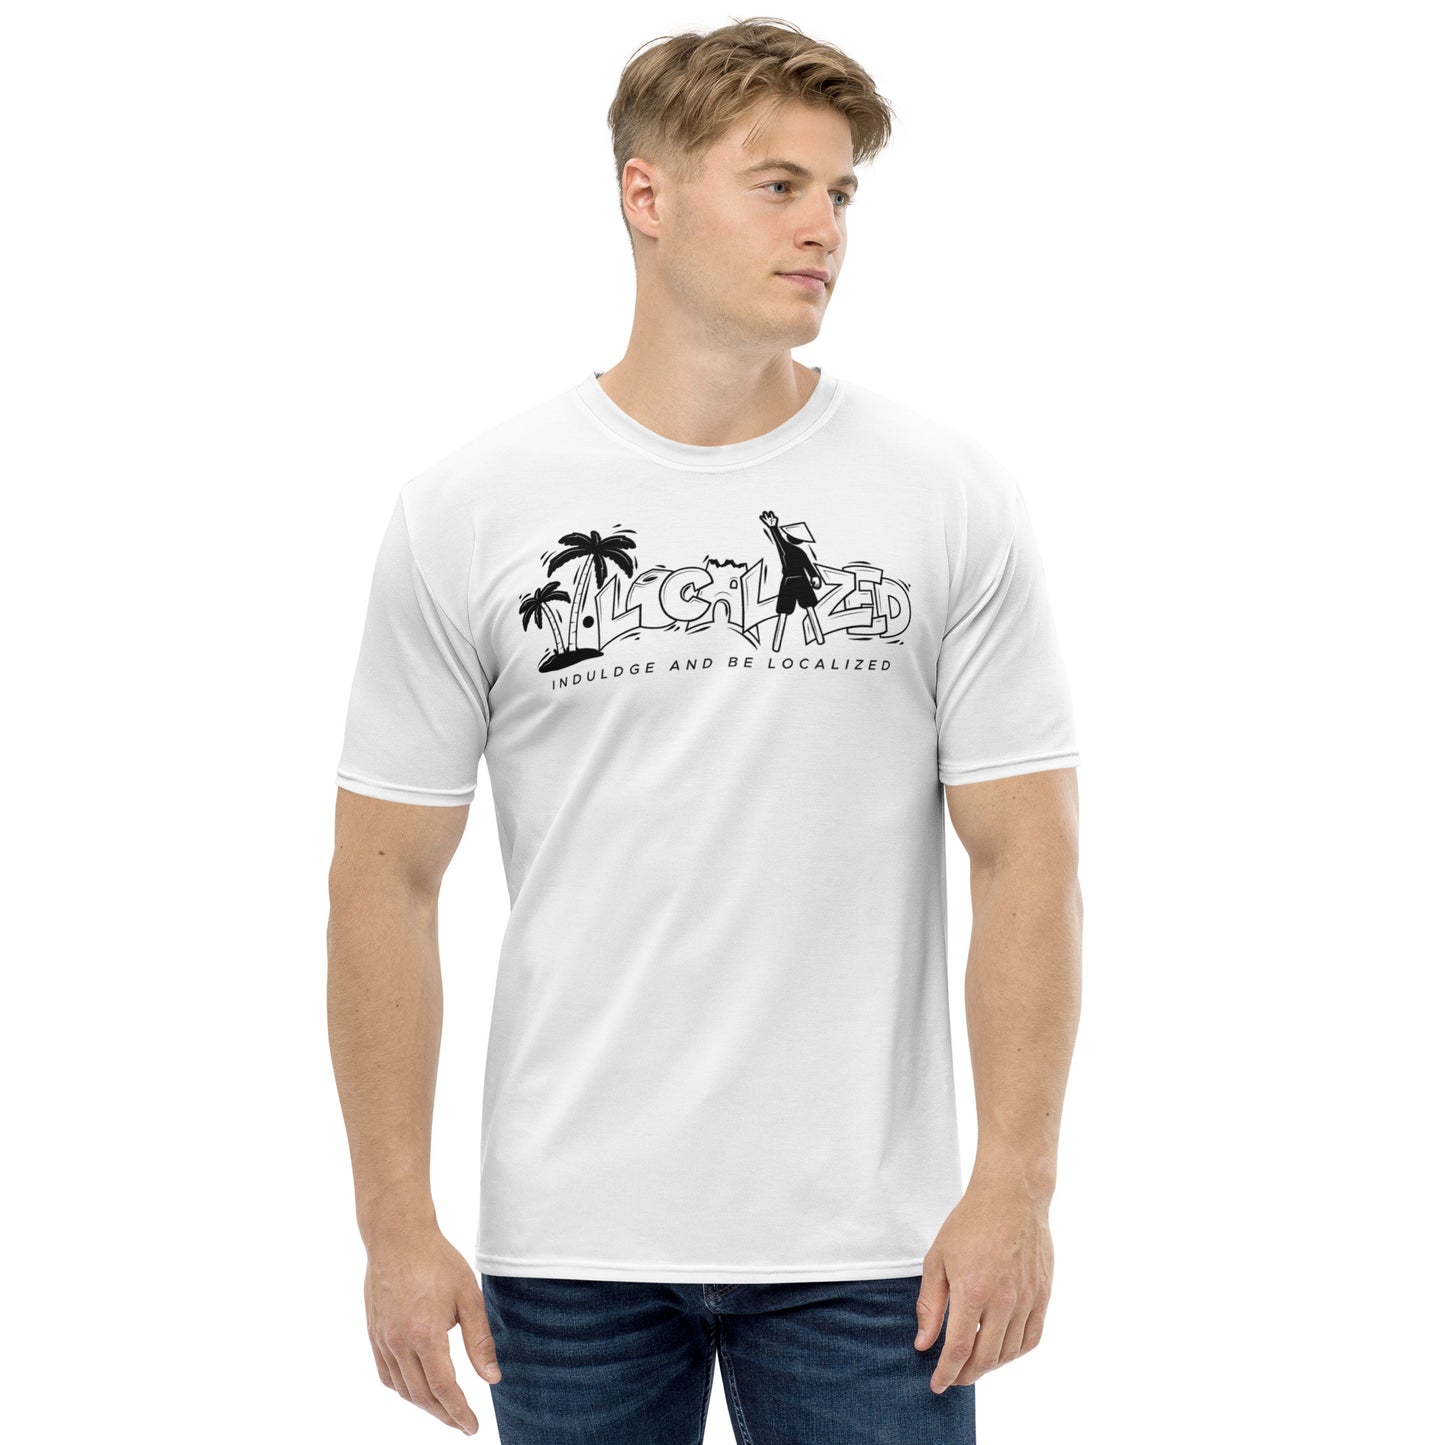 White V.Localized (Black/White) Men’s Dry-Fit T-Shirt